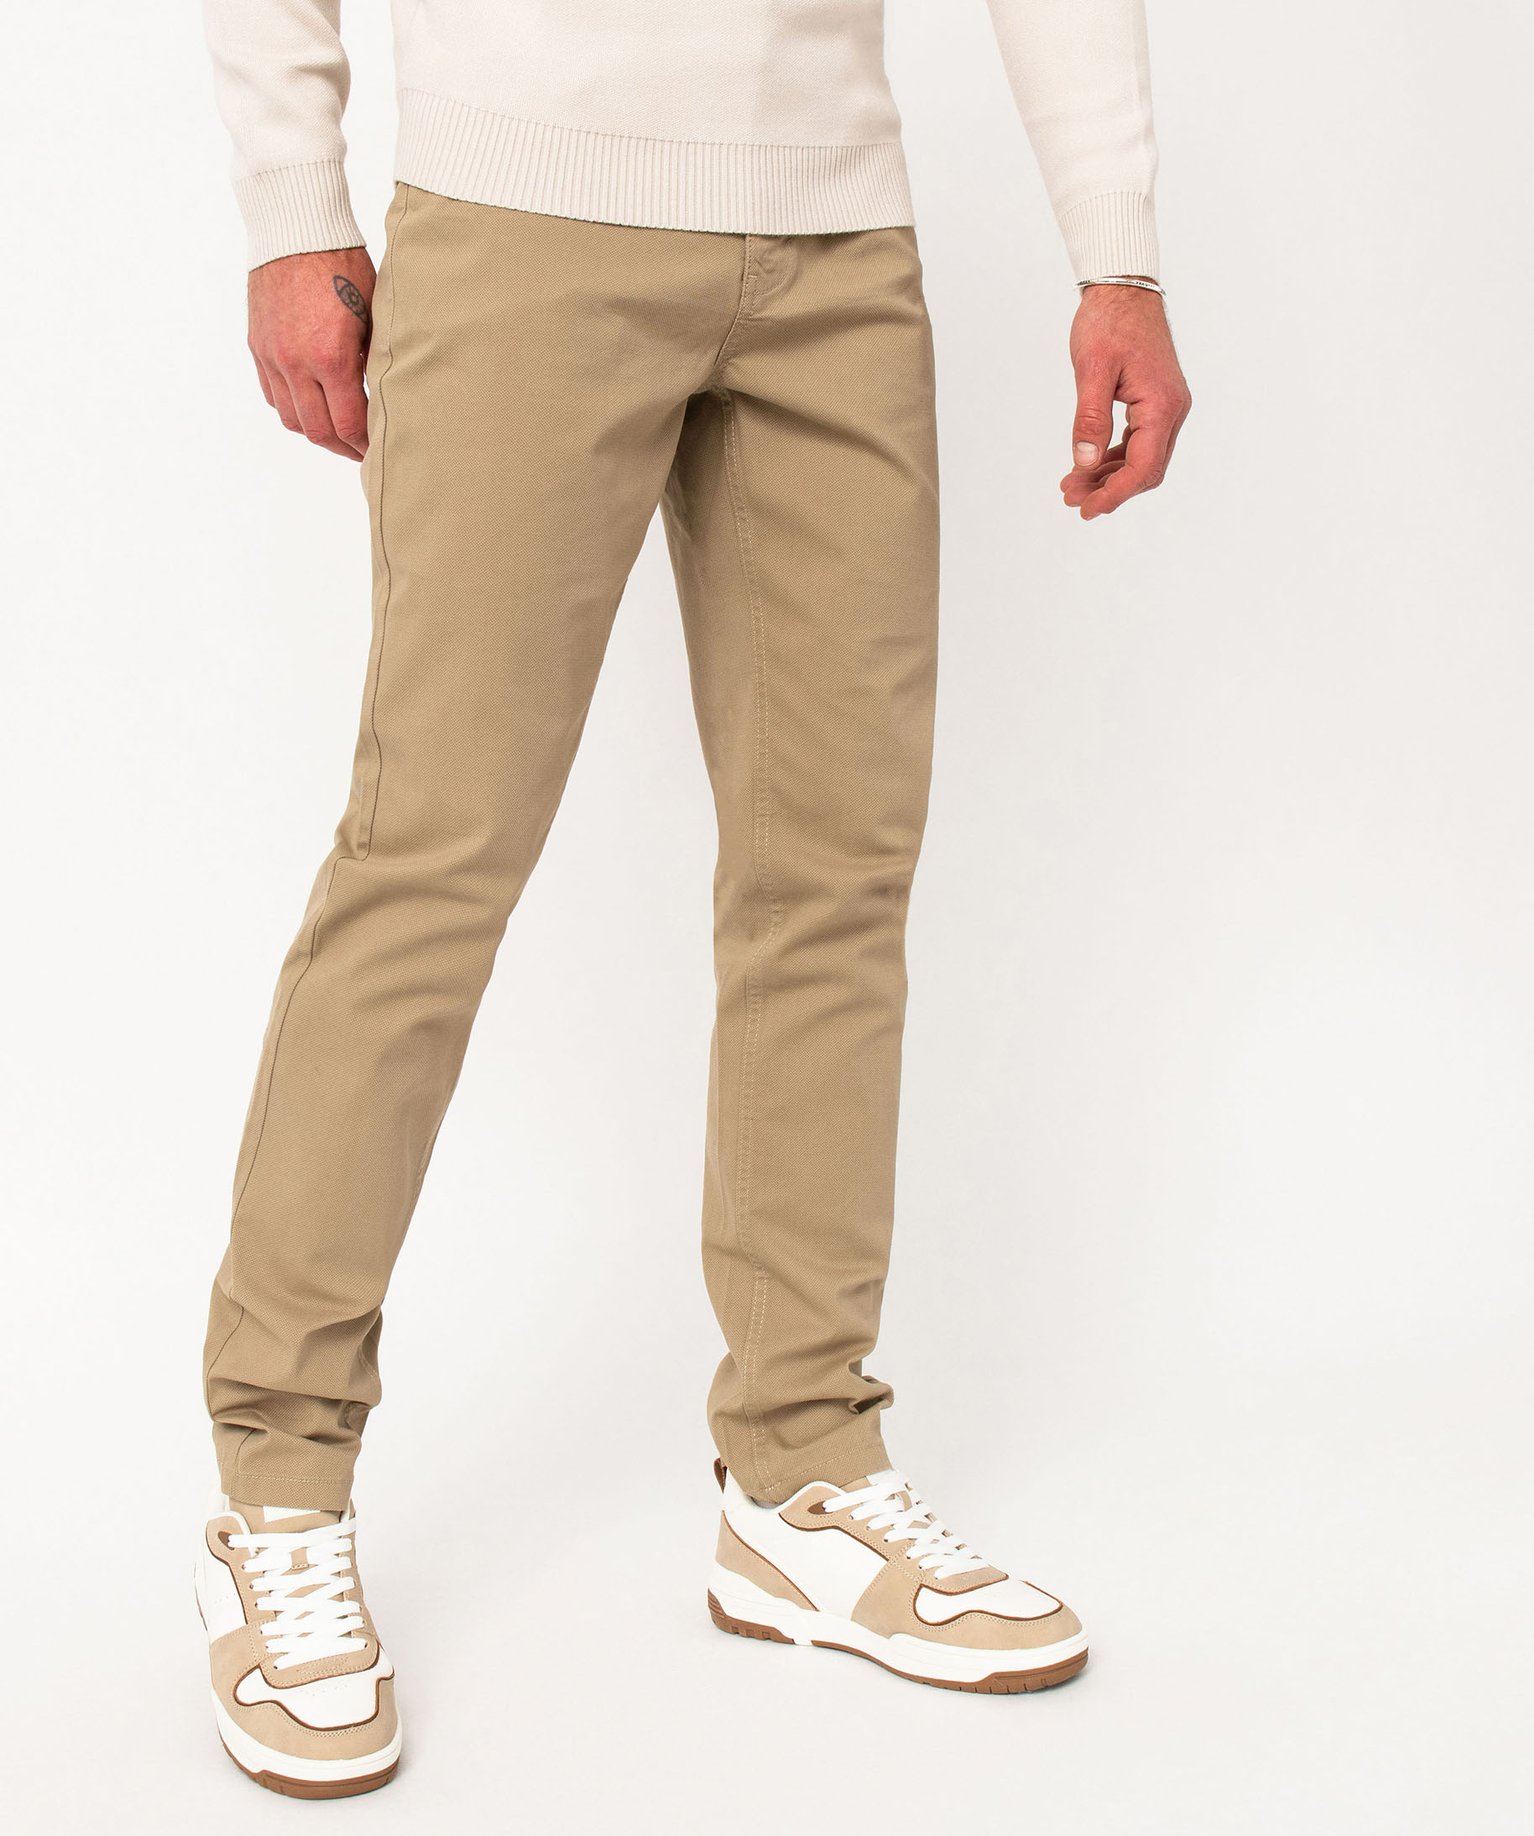 pantalon slim 5 poches en toile extensible homme beige